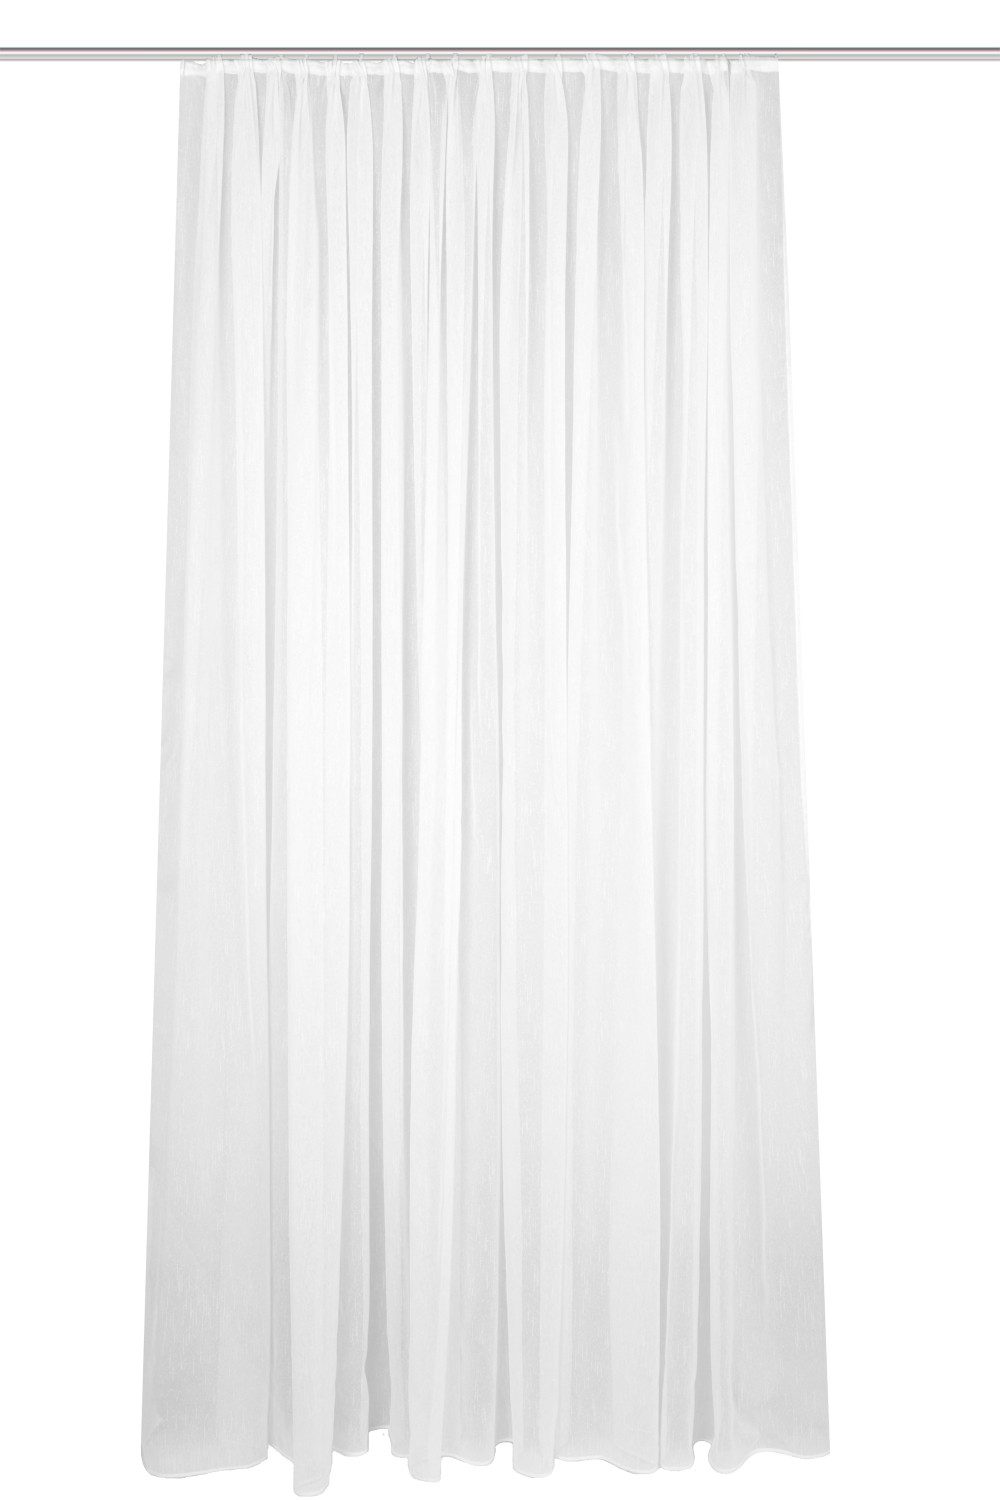 Vorhang 41694 Store/Gardine "FLAMIO", transparenter Fertigstore, Farbe: Weiß, Schmidt Gard, 100% Polyester